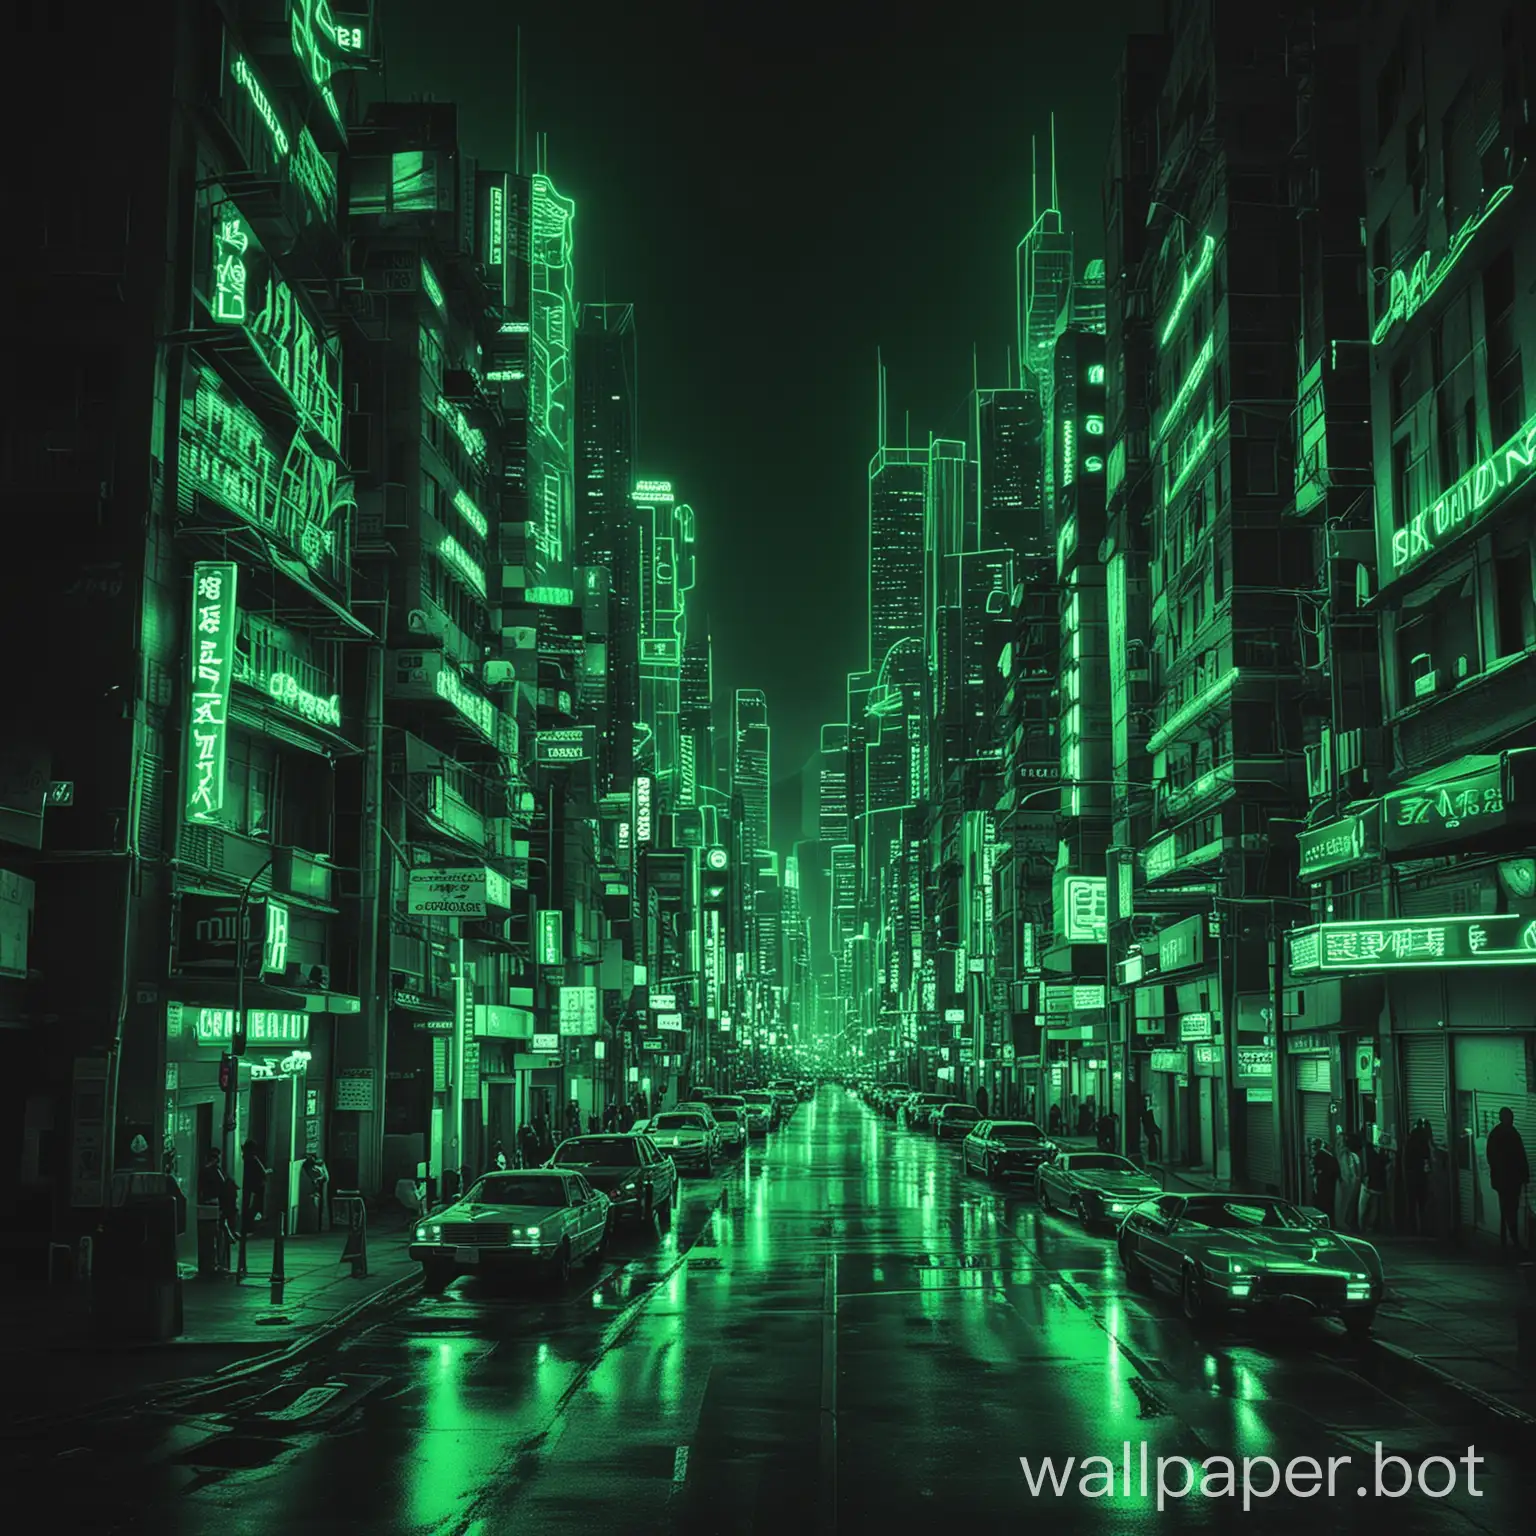 Futuristic-Urban-Landscape-Vibrant-Green-Neon-Cityscape-Illuminated-at-Night